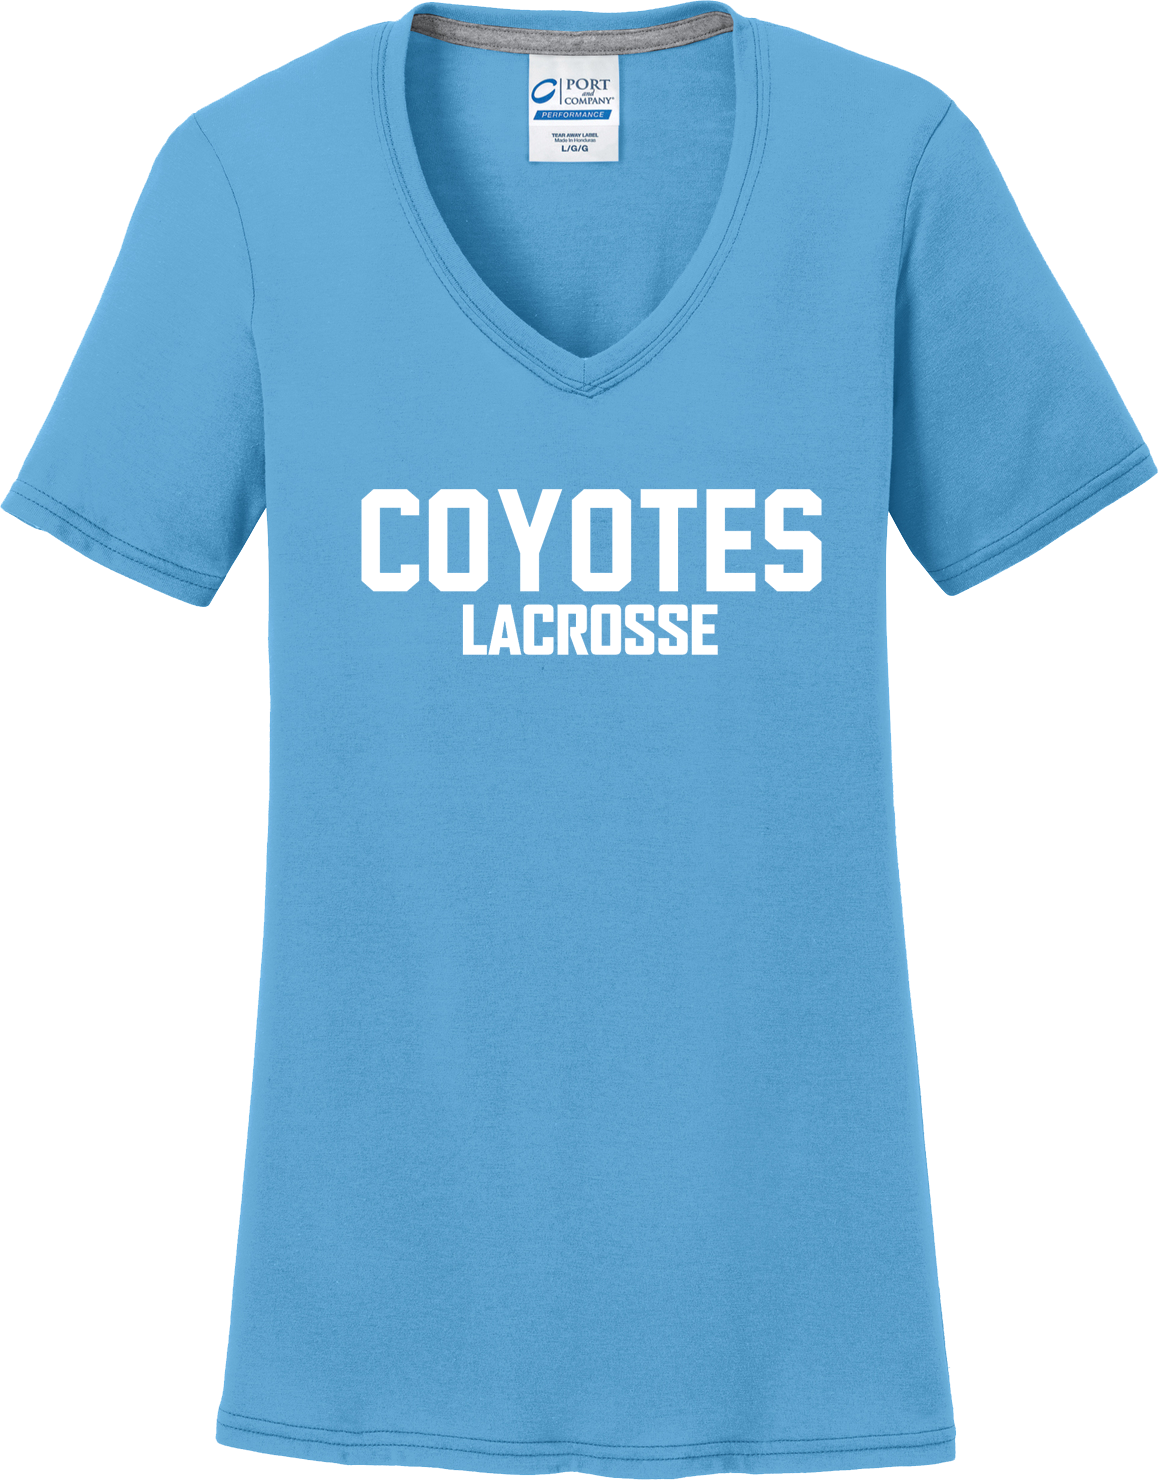 Coyotes Lacrosse Women's T-Shirt